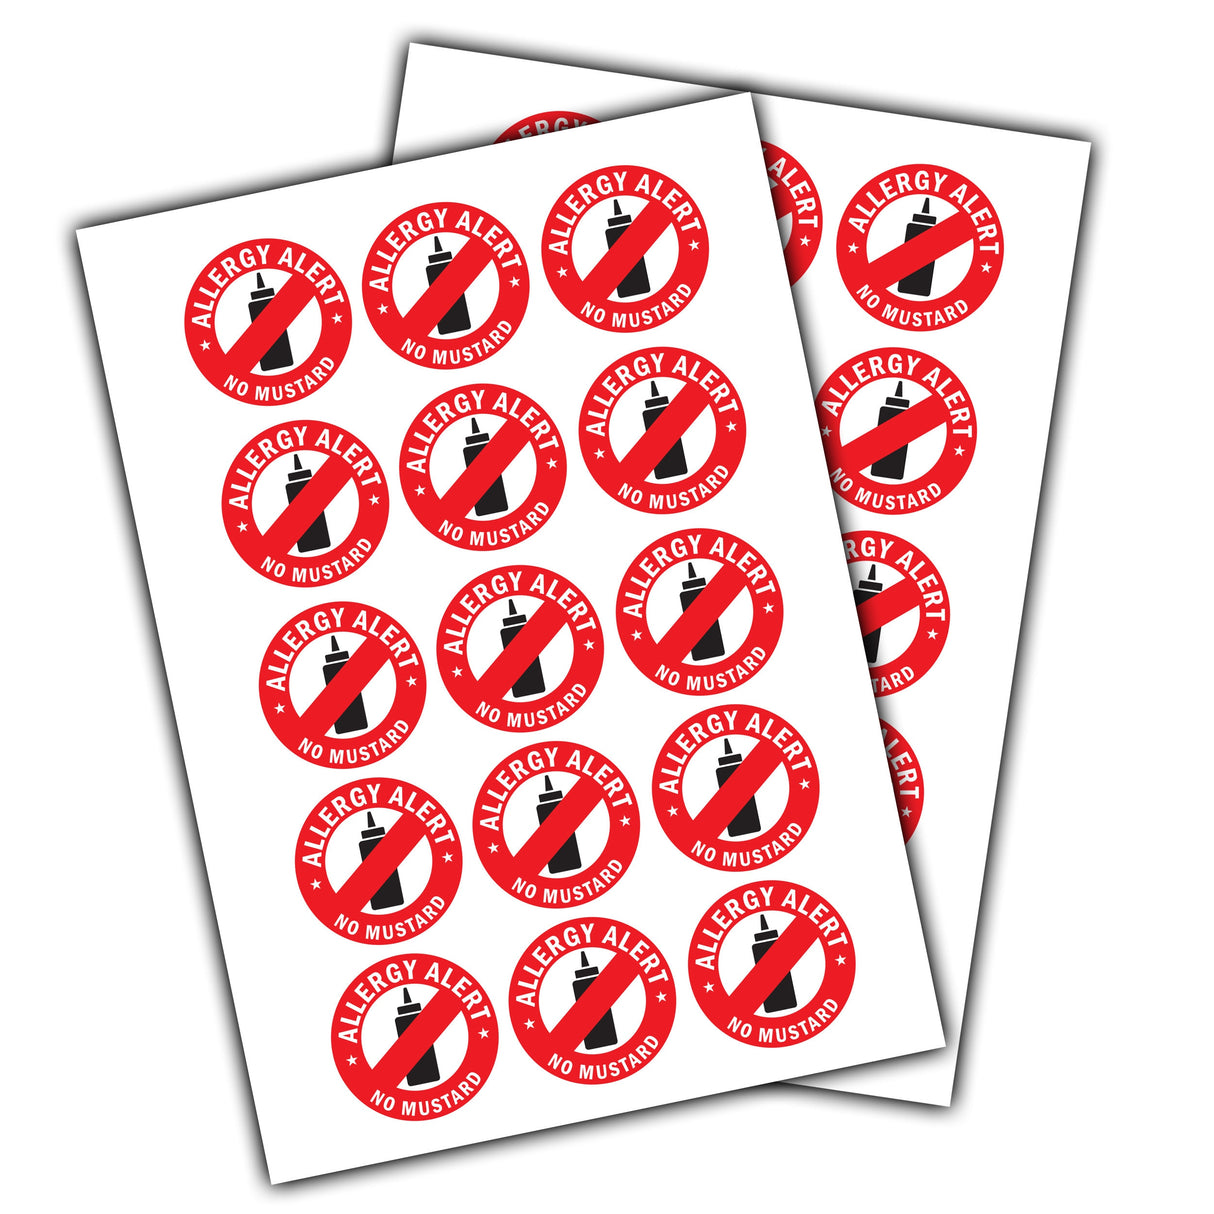 24x No Mustard Allergy Alert Sticker - Food Allergies Awareness Safety Decals